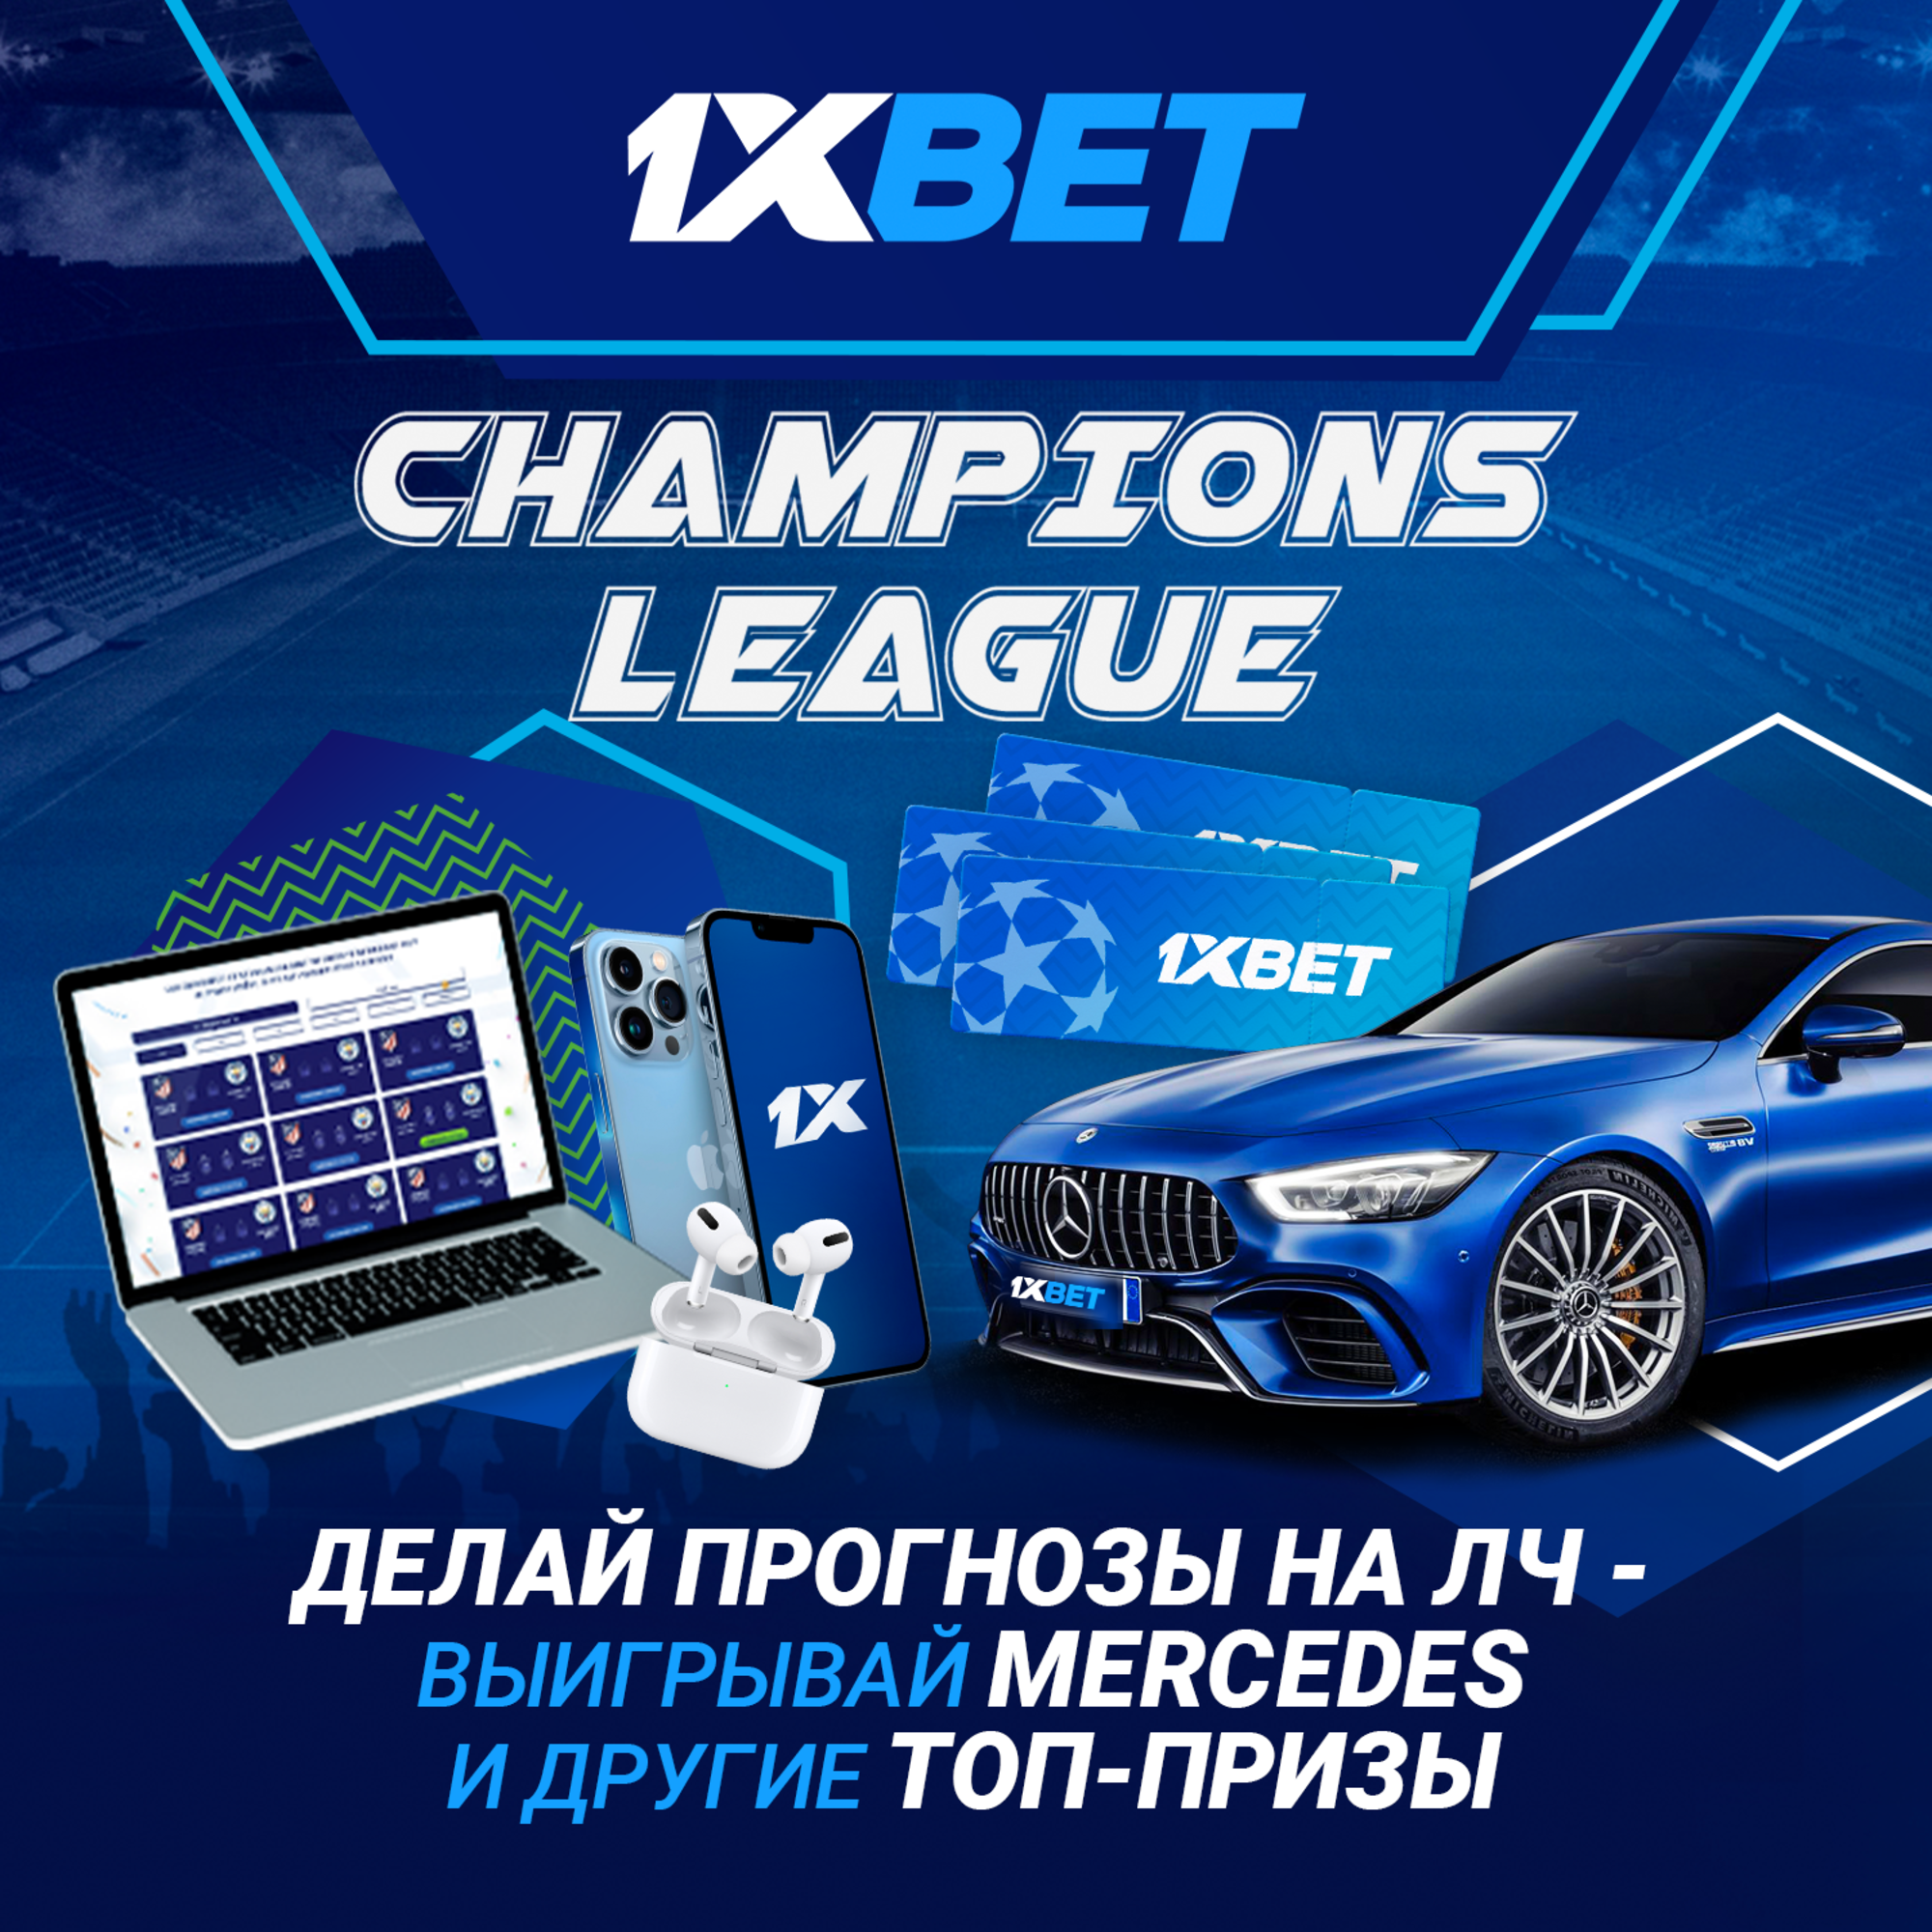 1xBet запускает новую акцию Champions League с розыгрышем ценных призов